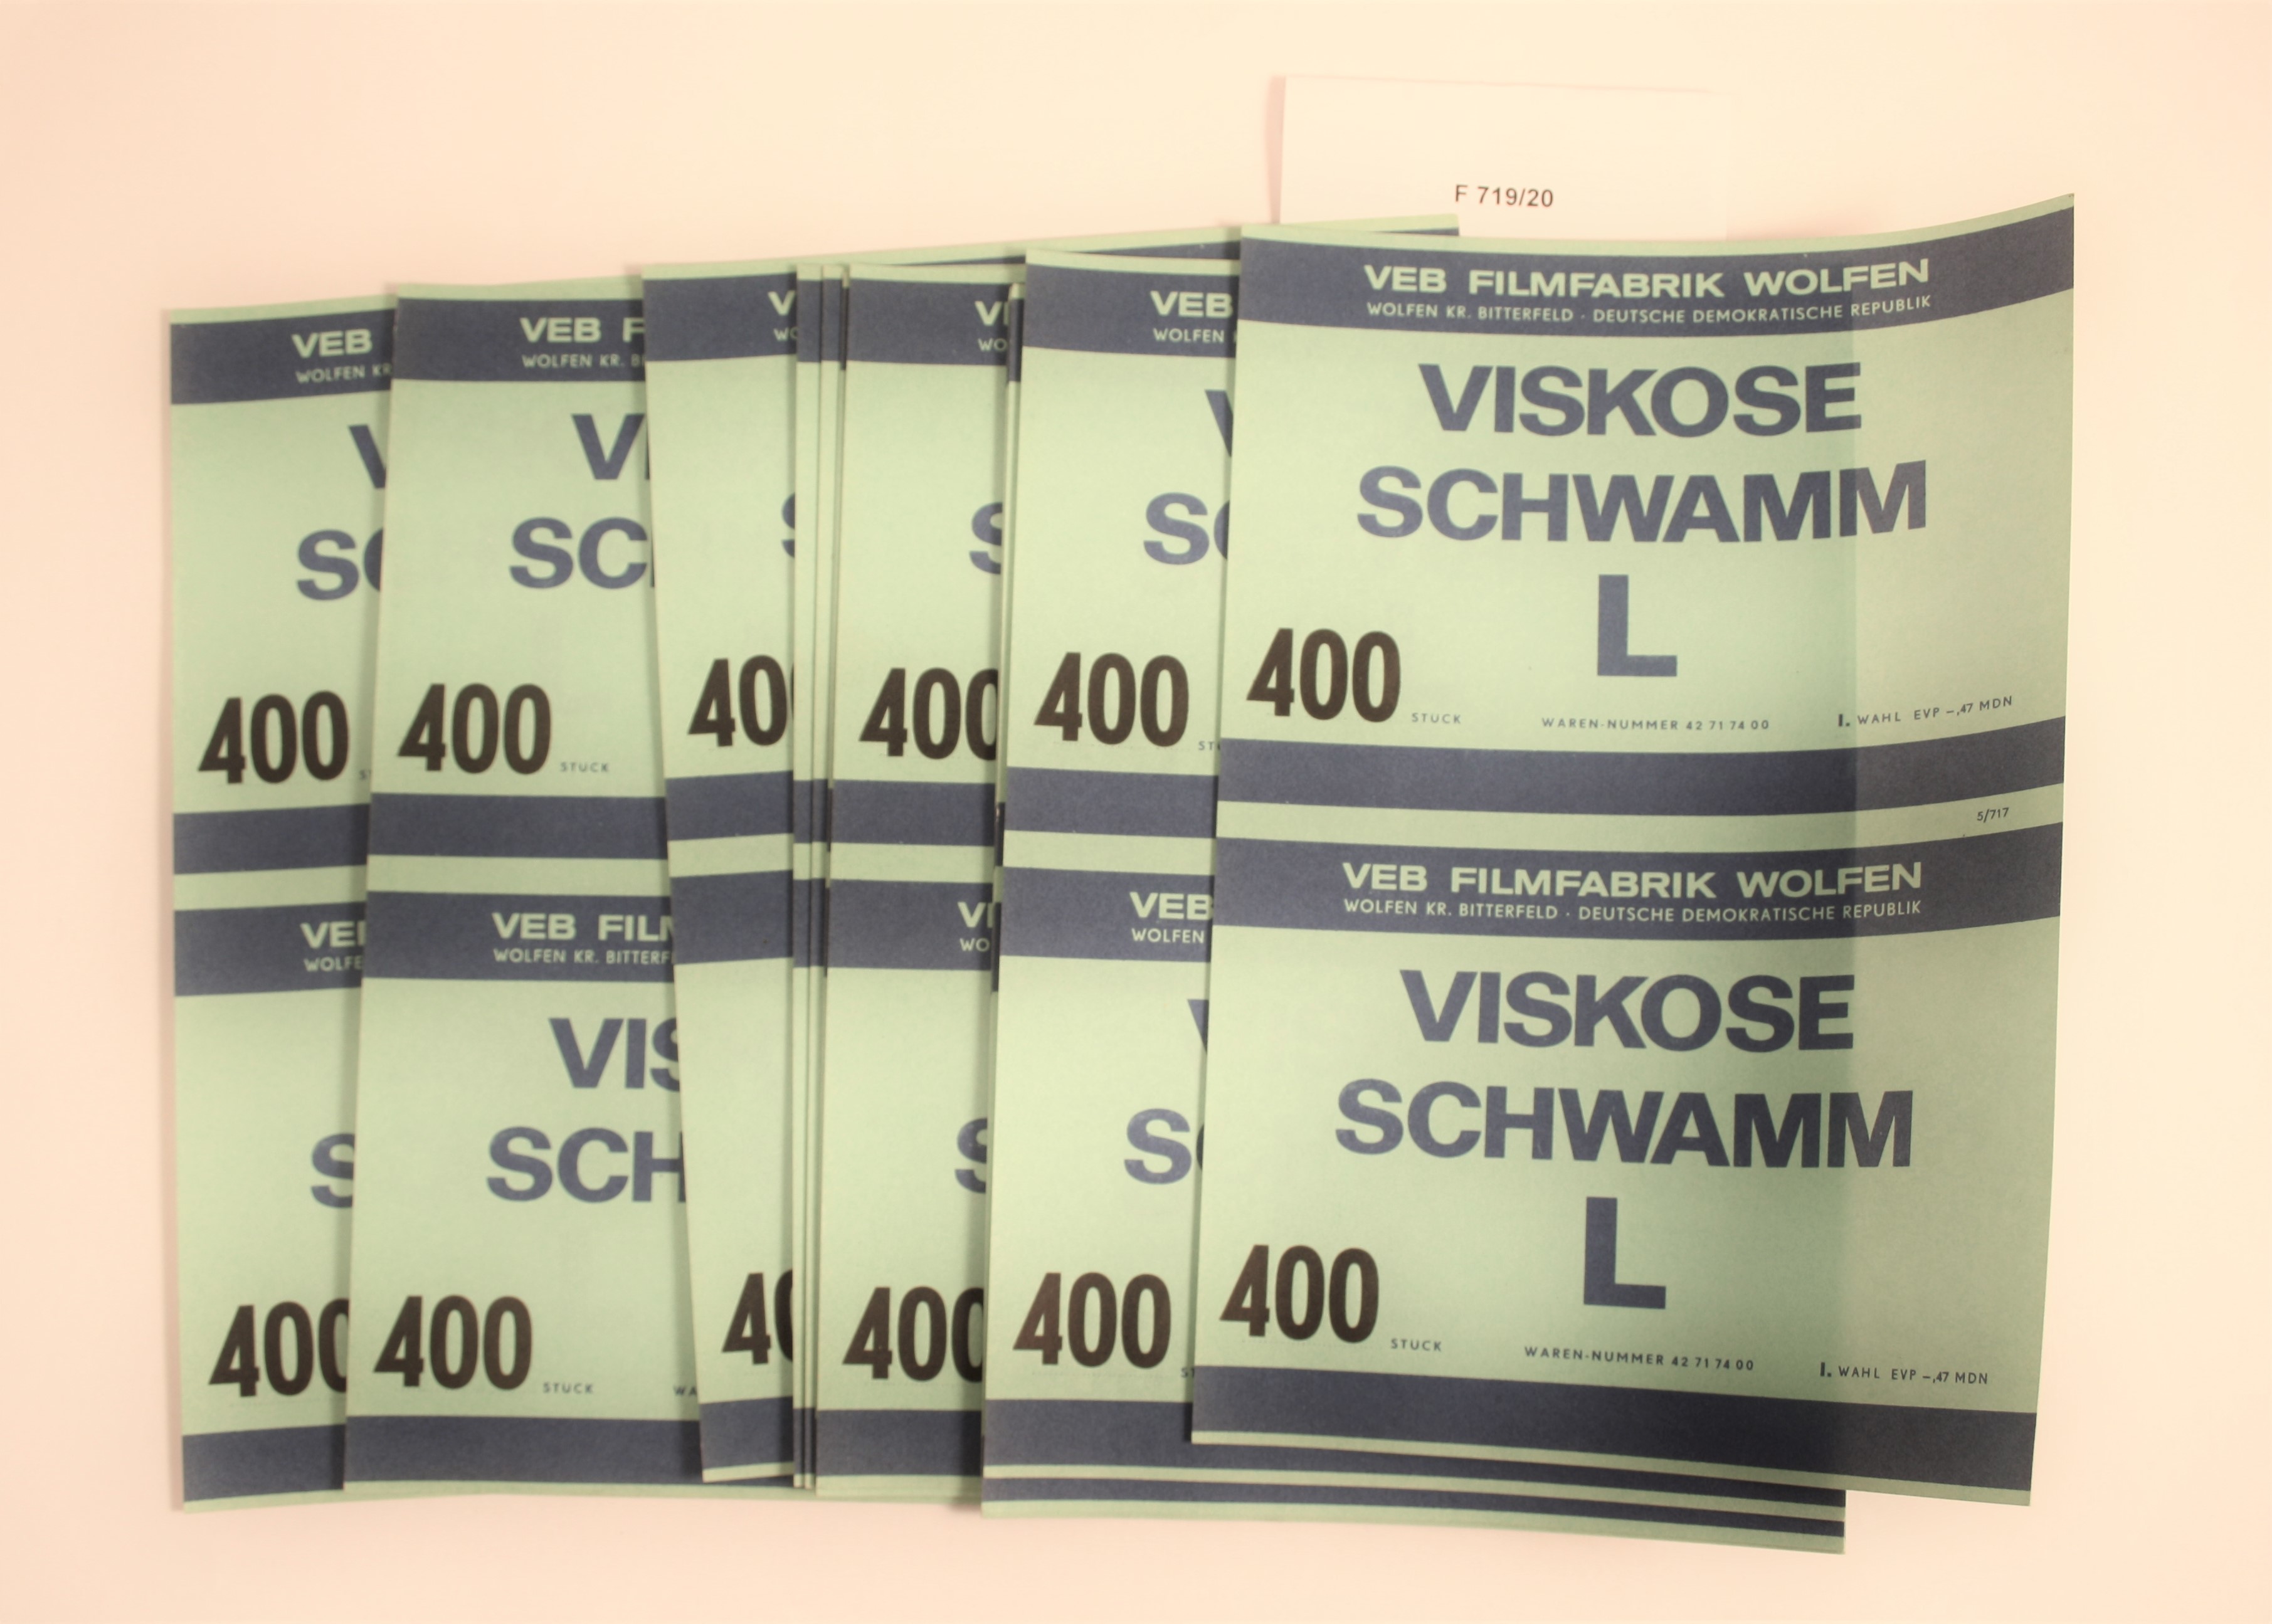 Produktzettel Viskose Schwamm L (Industrie- und Filmmuseum Wolfen CC BY-NC-SA)